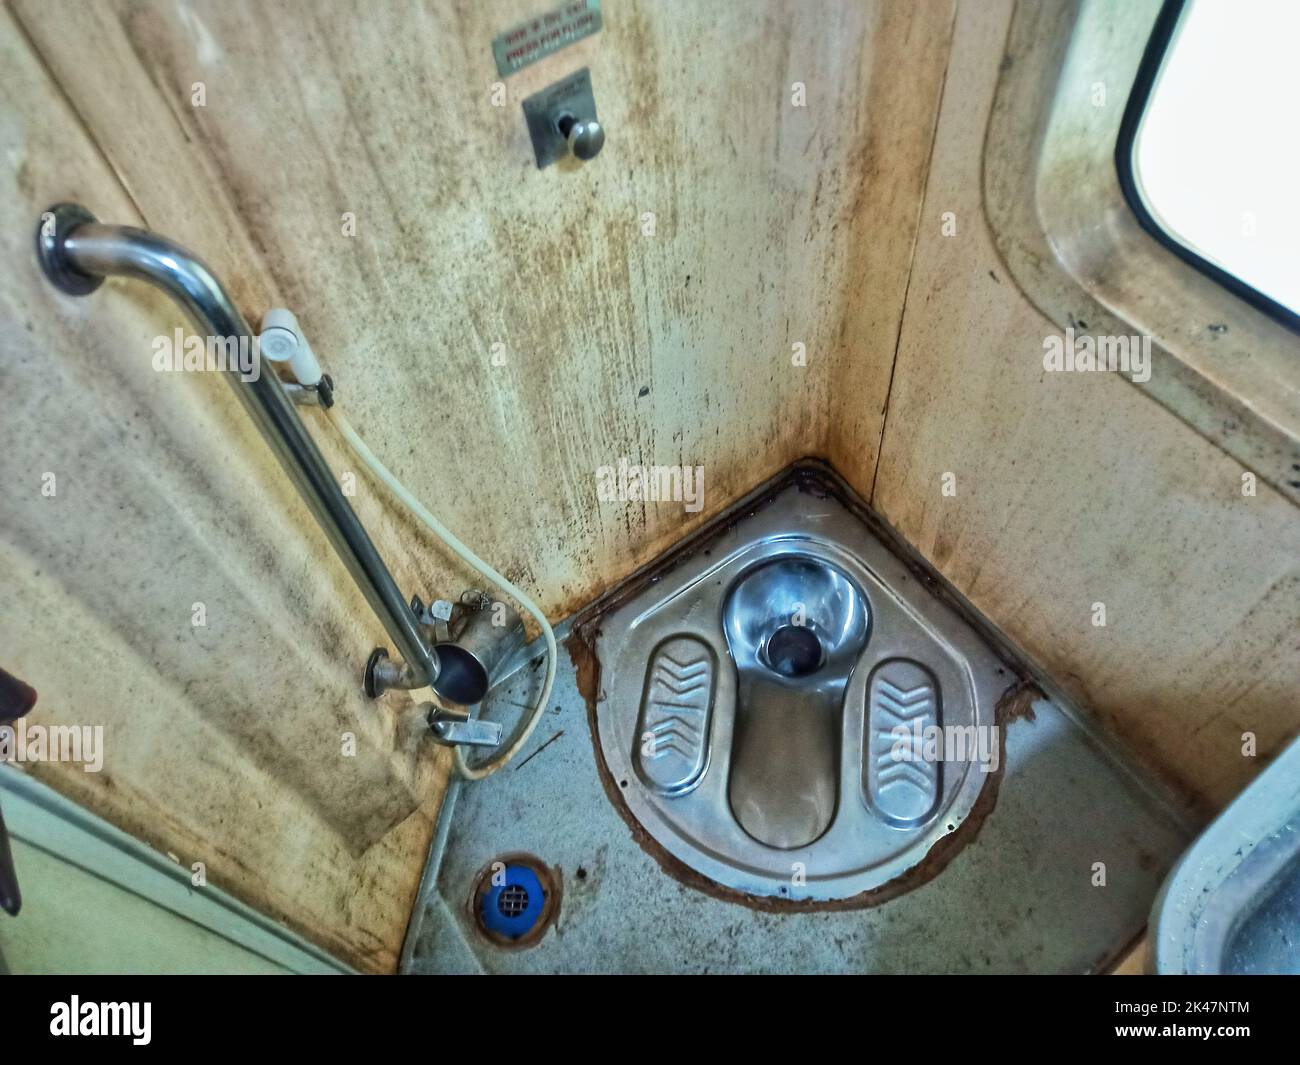 Toilette im indischen Stil von einem Zug, der im Besitz der indischen Eisenbahn ist, indische Toilette, unhygenische Toilette, Fahrt mit dem Zug, Zug, Zug, indischer Zug, Transport Stockfoto